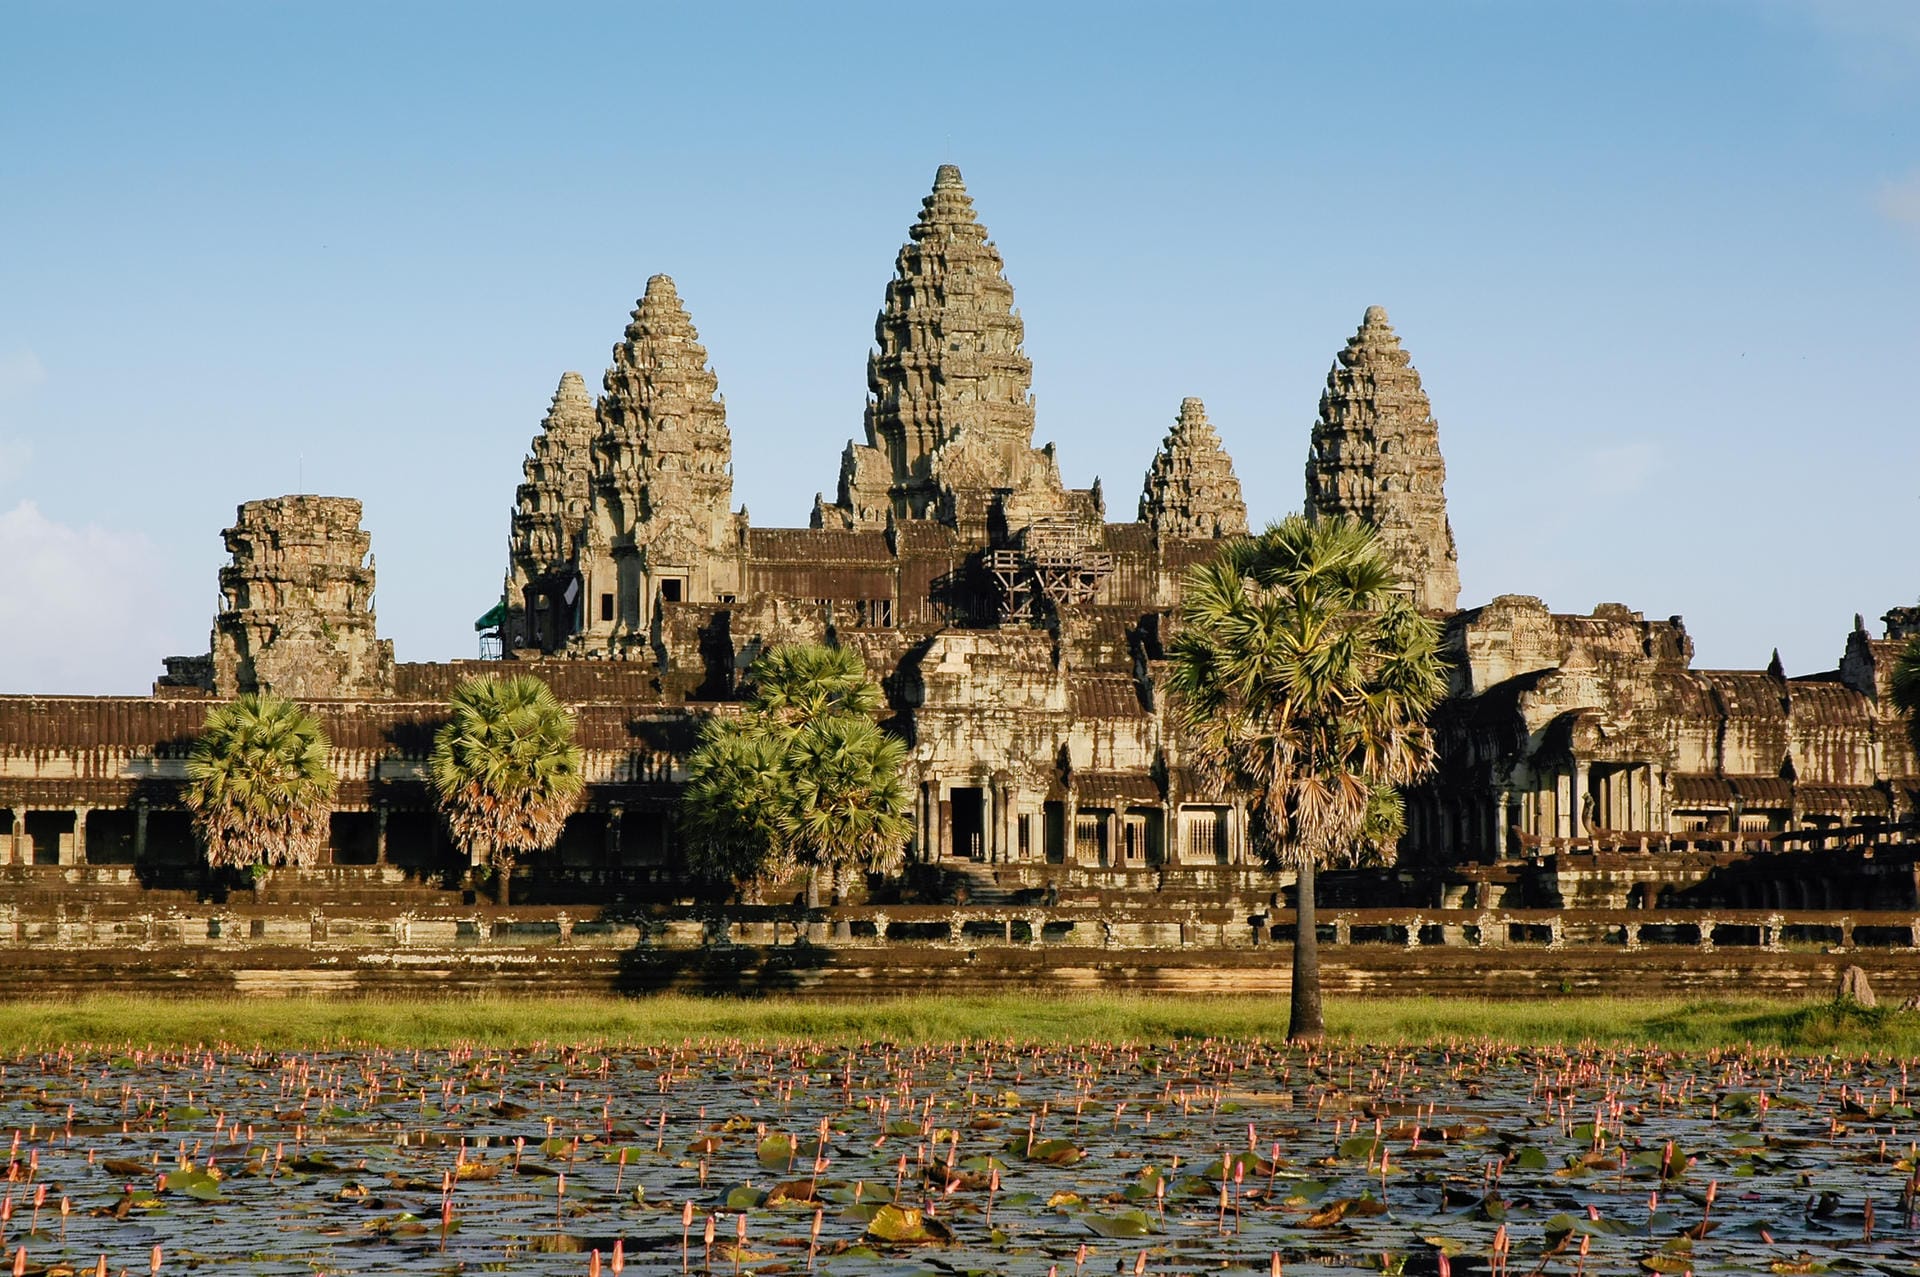 Angkor Wat: Aufgrund der Urbanisierung der Gegend rund um die Tempelanlage Angkor Wat geht der Grundwasserspiegel zurück. Es drohen Wasserknappheit und ein Absinken der historischen Bauwerke.